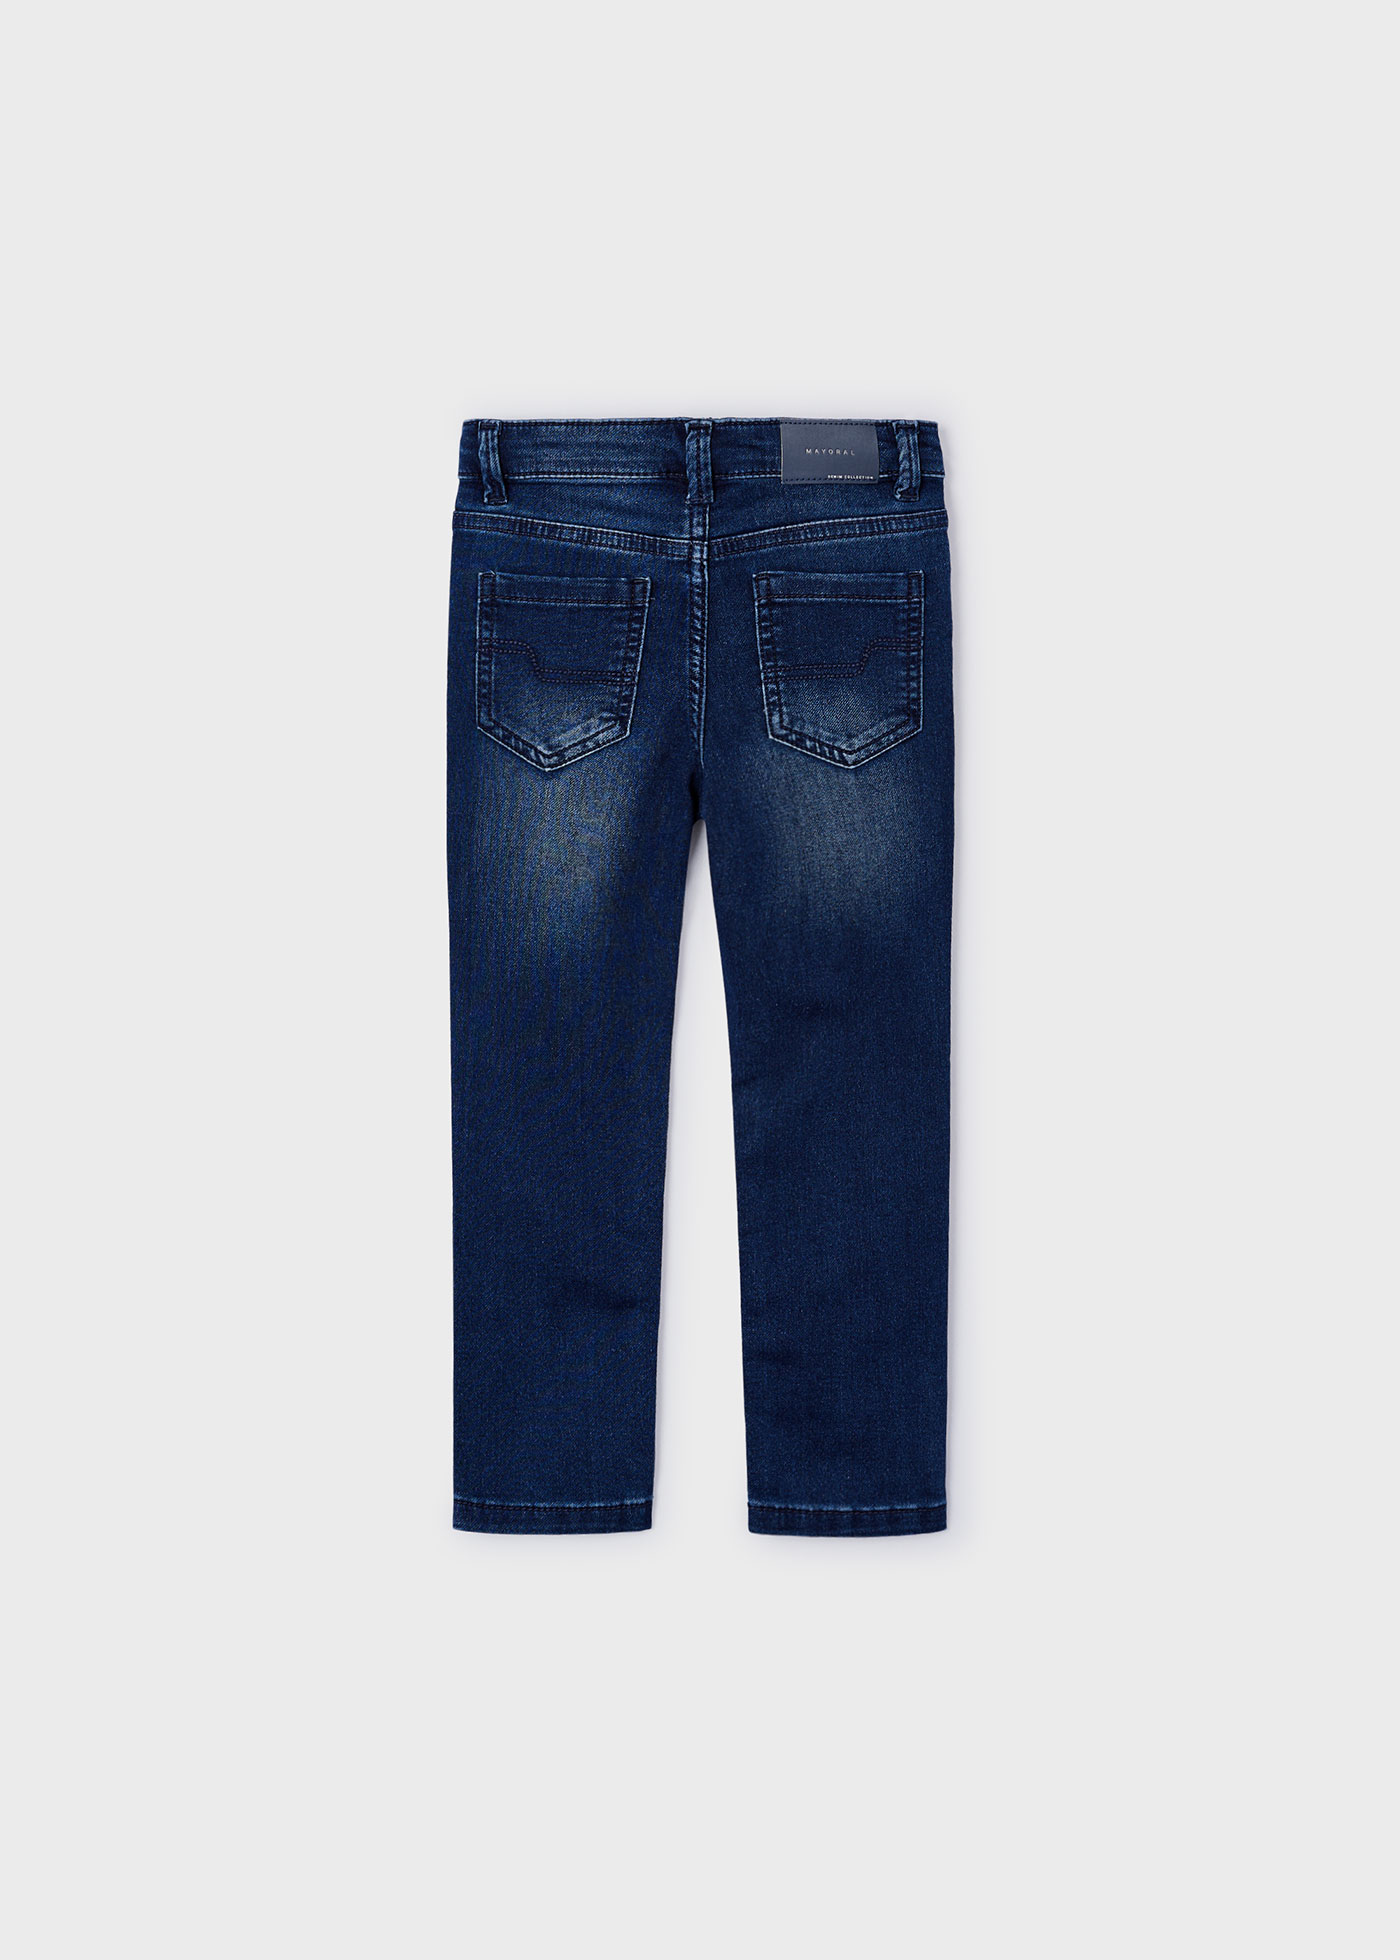 Pantalone jeans slim Better Cotton bambino